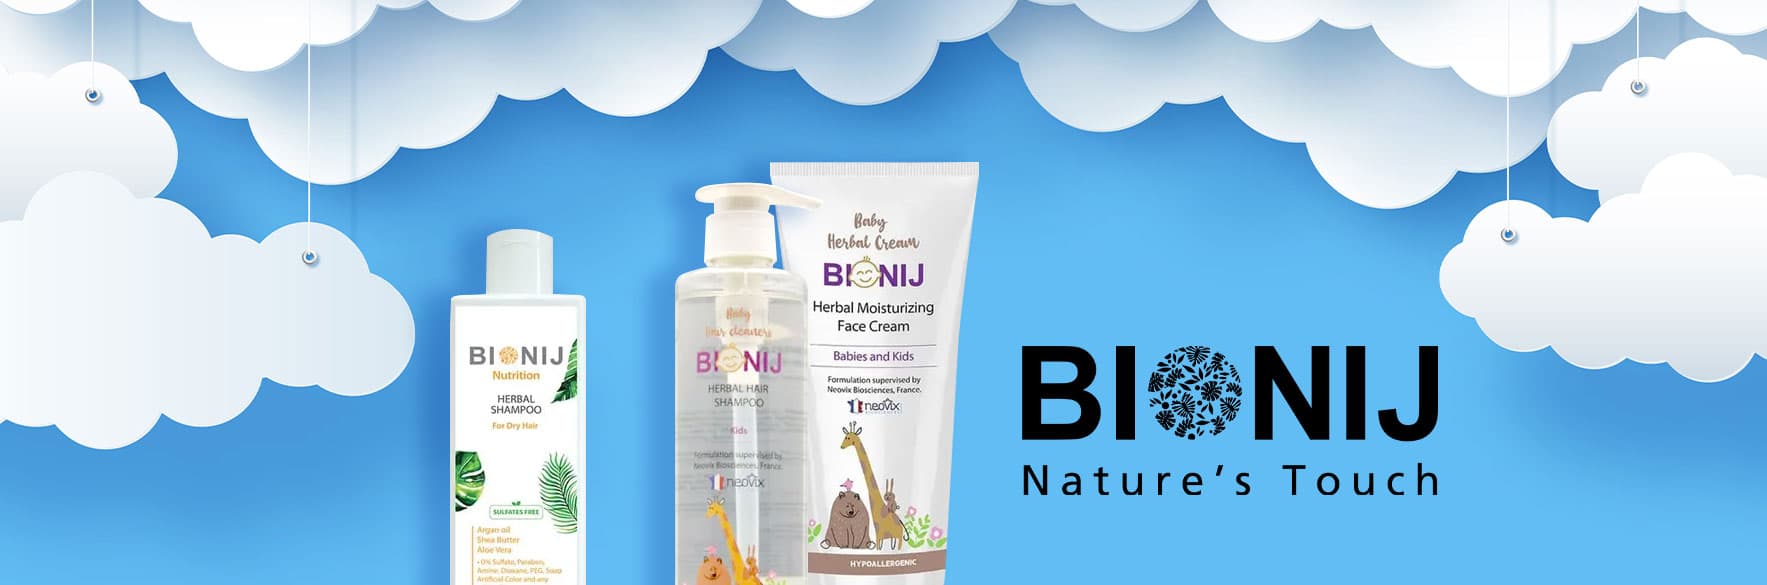 محصولات بیونیج BIONIJ برای پوست و مو